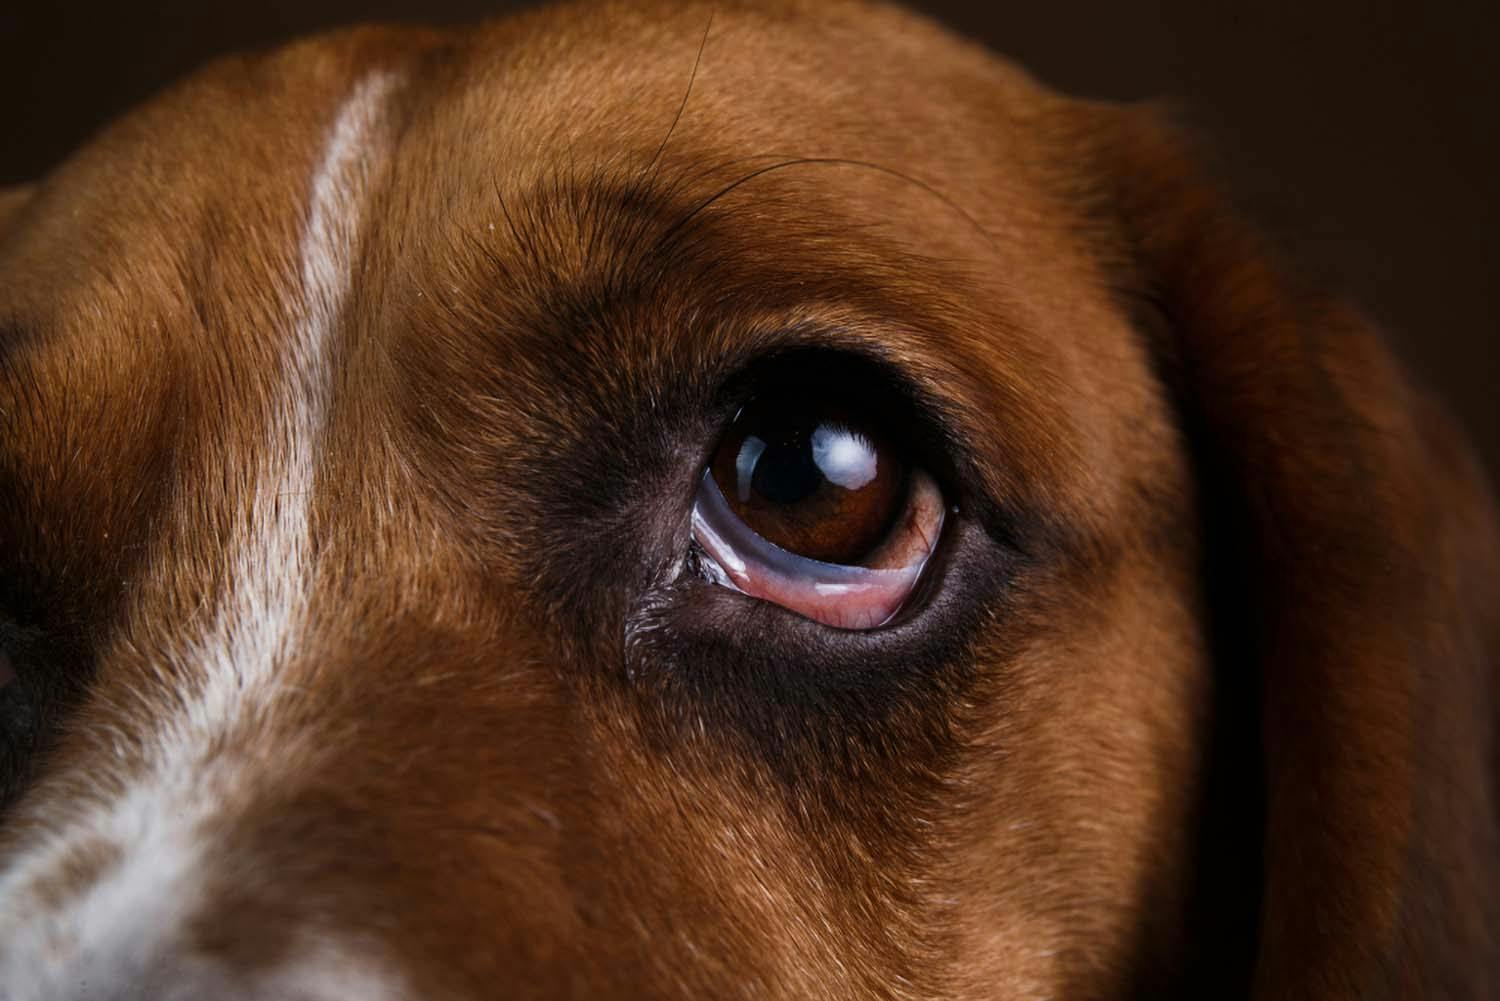 獣医師監修 犬の目が赤い 充血している原因とは 考えられる病気と対処法 病院に連れて行くべき症状について解説 Illness 病気 わんクォール